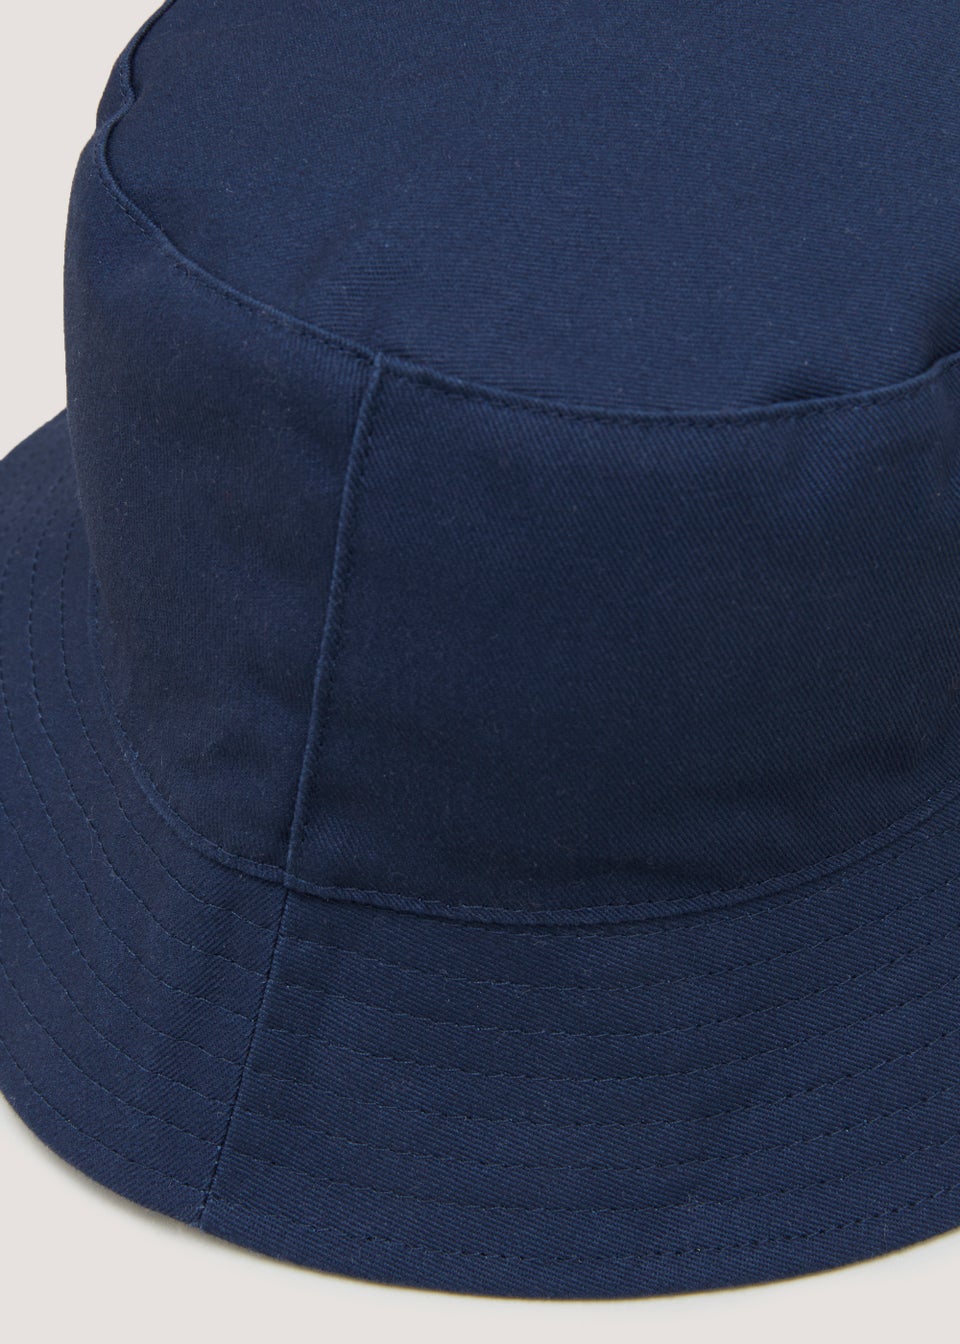 Navy Reversible Bucket Hat